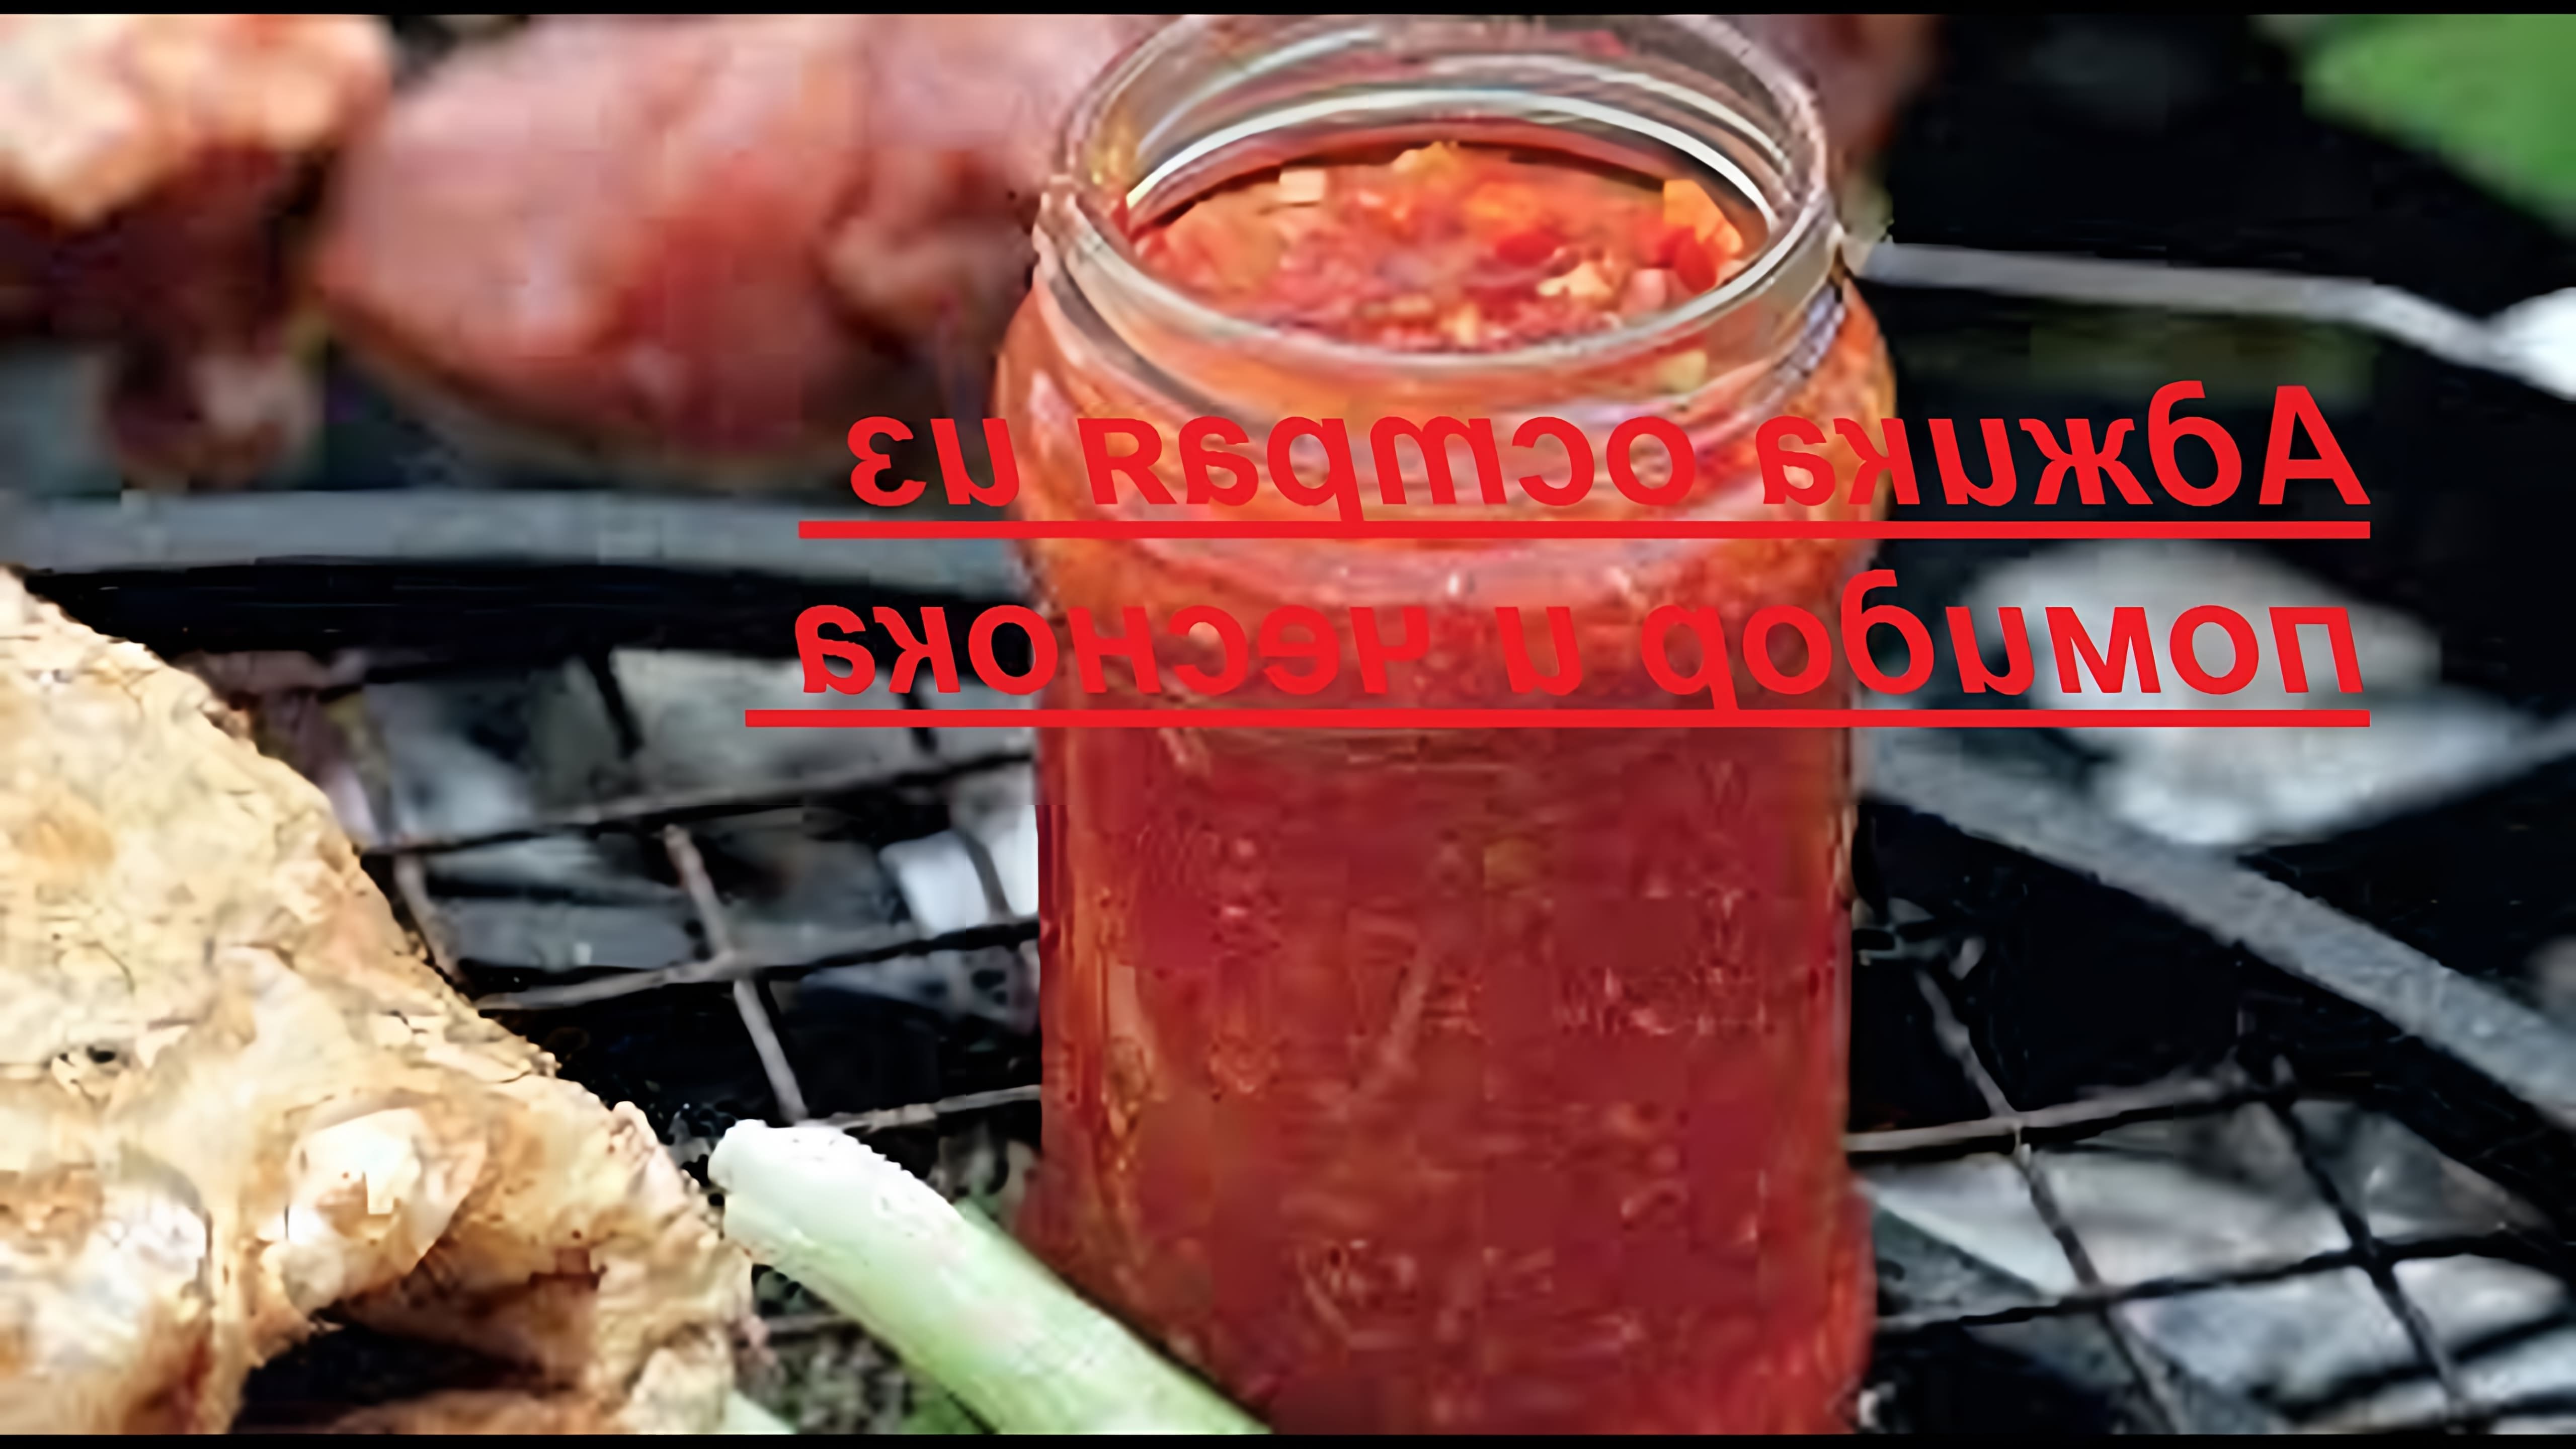 Видео рецепт для приготовления аджики, острой грузинской соуса из помидоров и чеснока